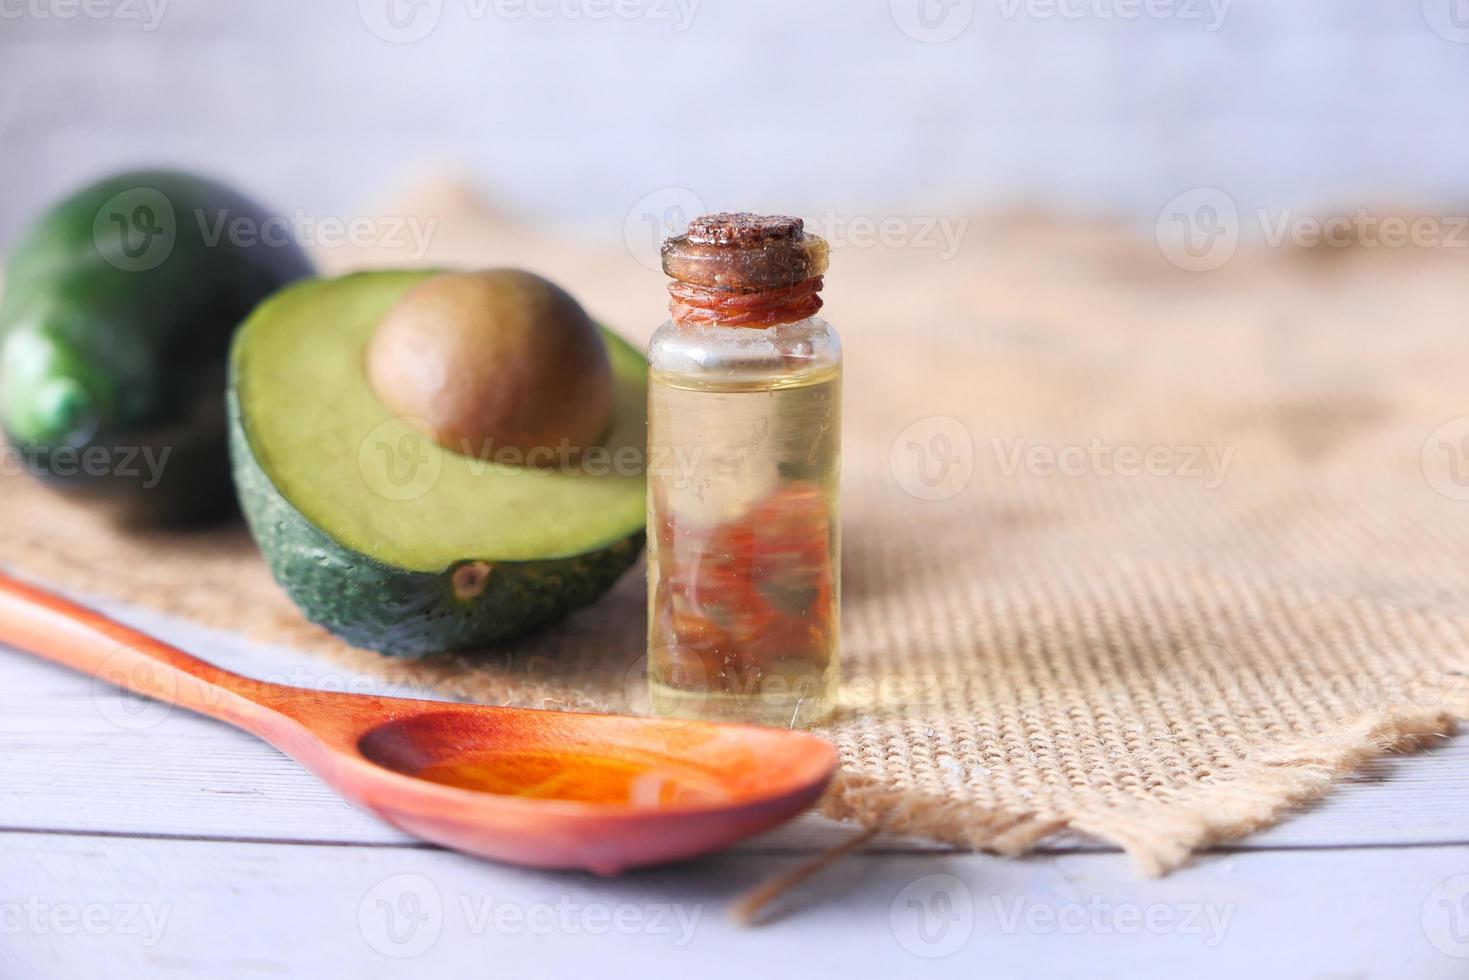 abacate e óleo em fundo neutro de cozinha foto